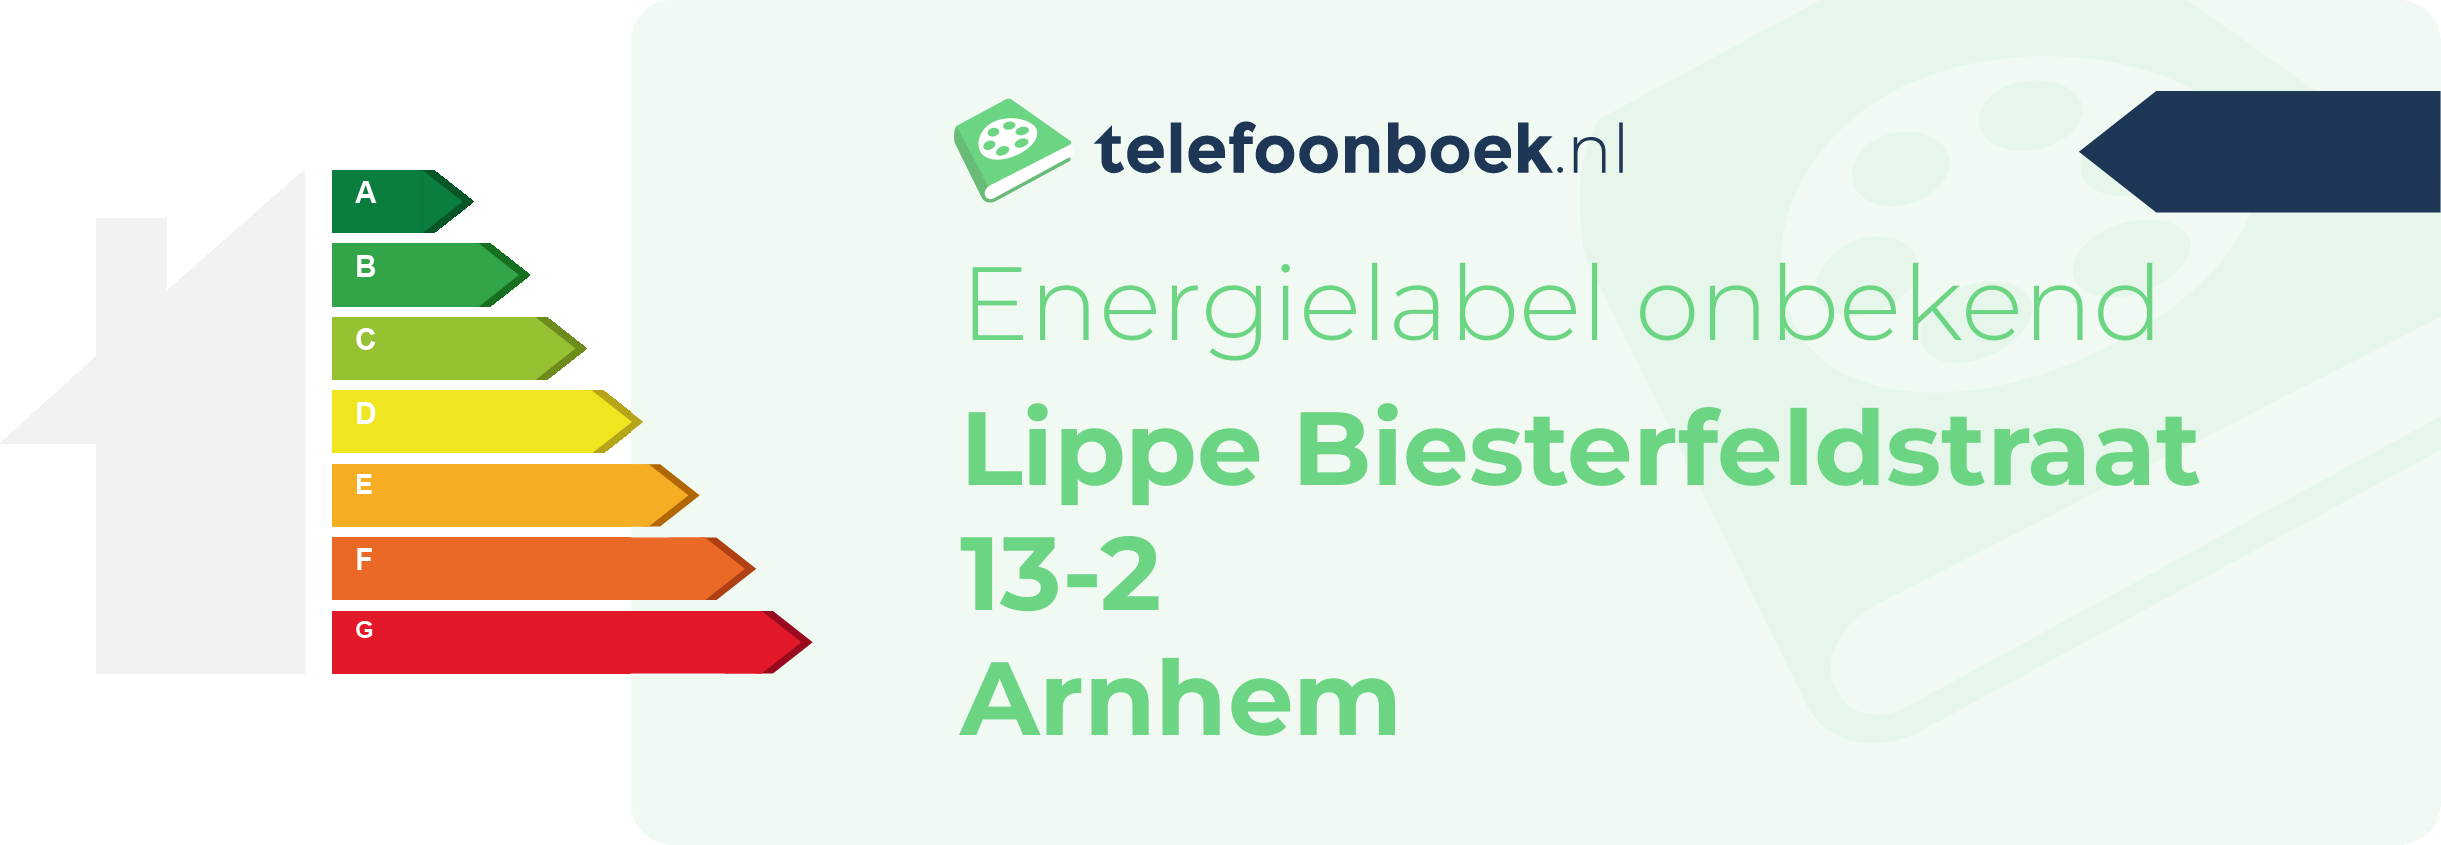 Energielabel Lippe Biesterfeldstraat 13-2 Arnhem